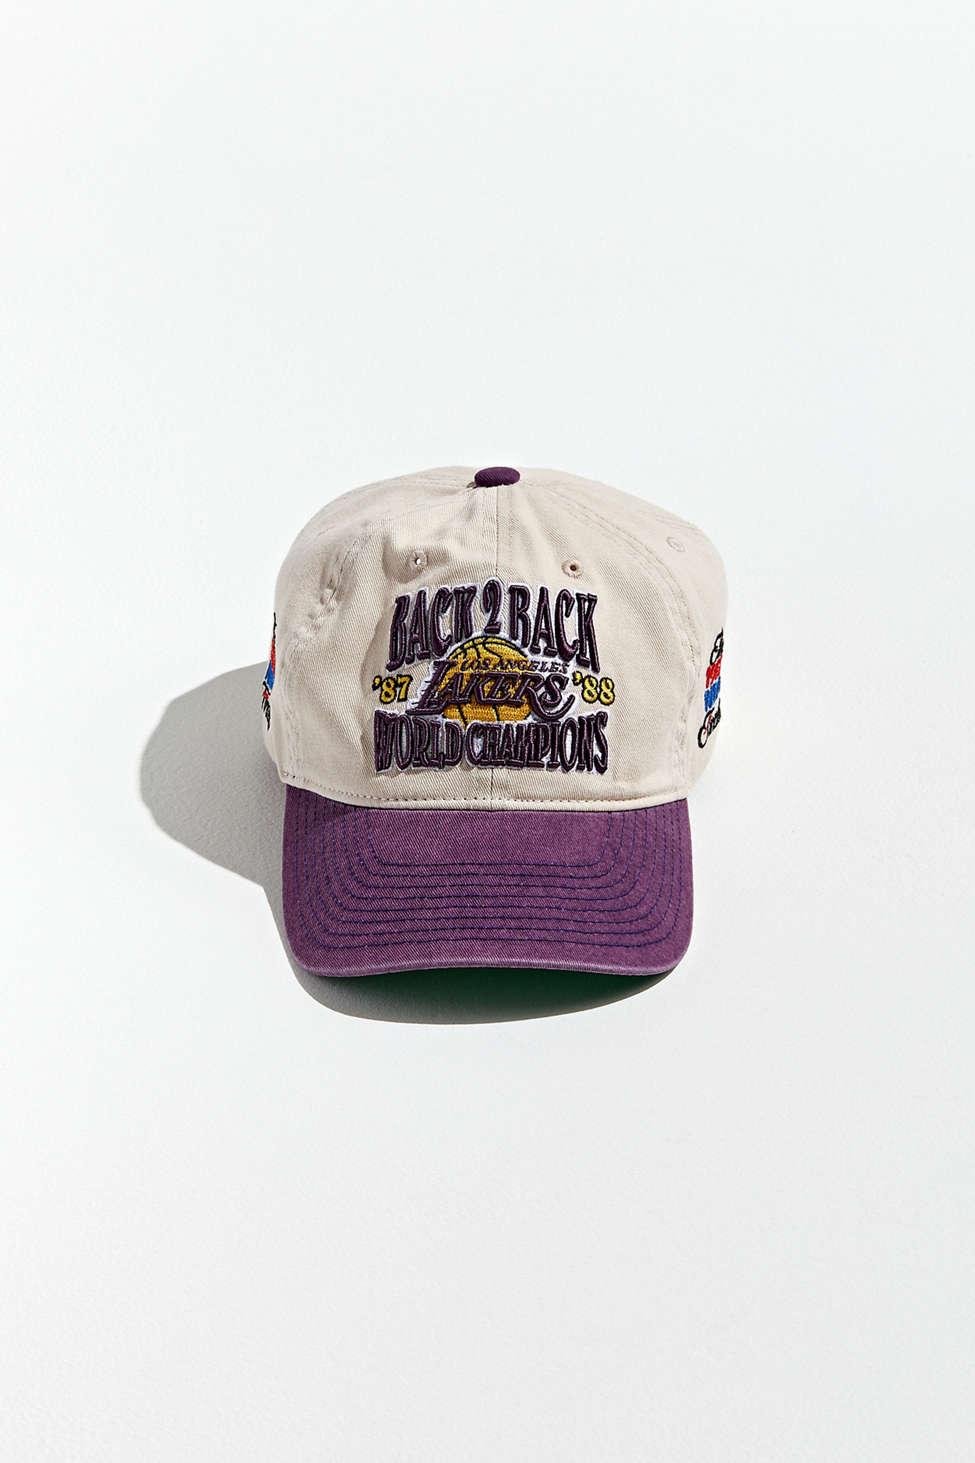 MITCHELL & NESS: NBA BACK 2 BACK CHAMPIONSHIP HAT – 85 86